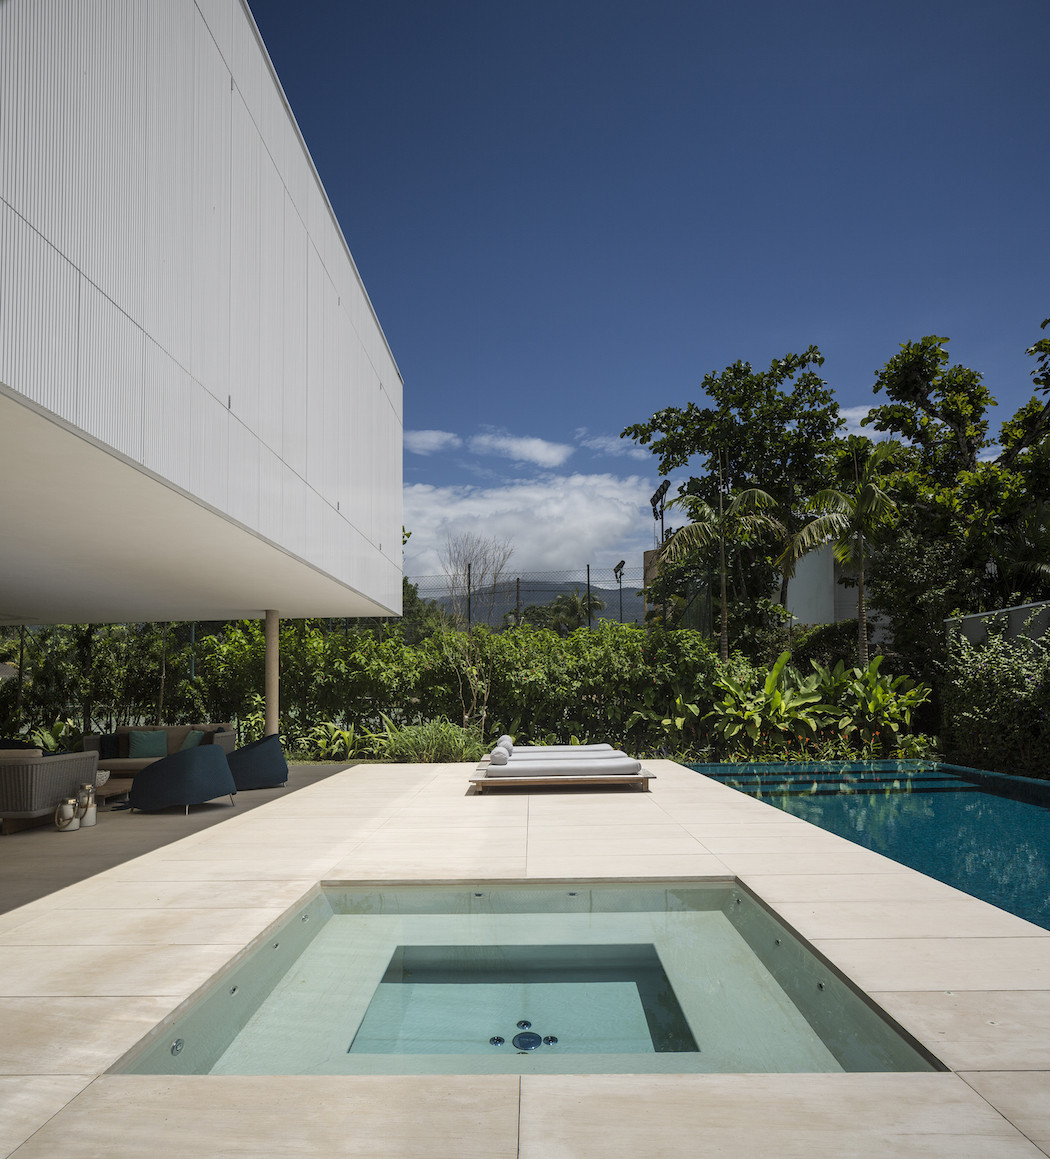 Minimalist concrete casa branca in the tropics  2